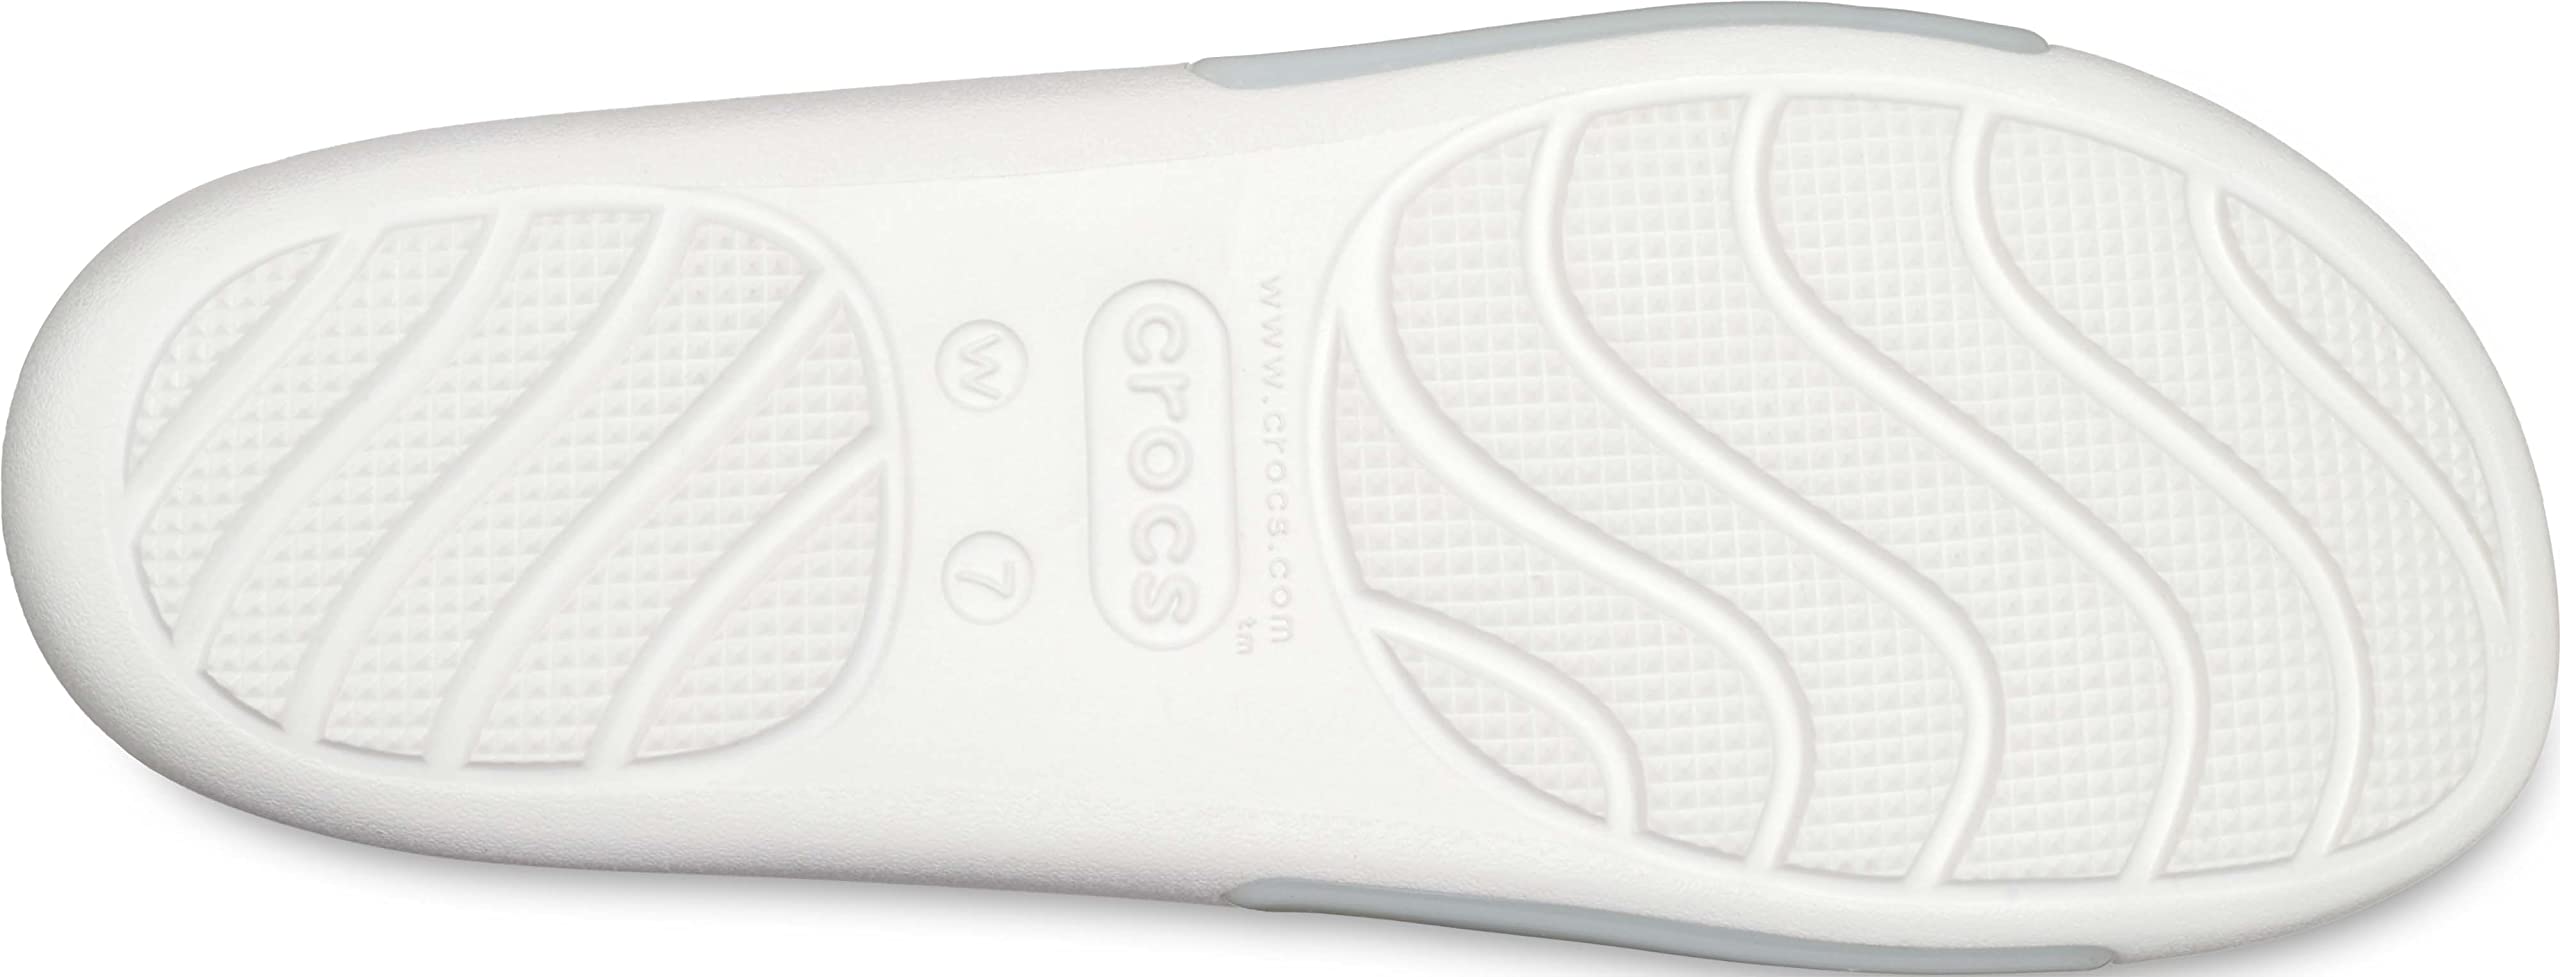 Crocs Women's Splash Slides Sandal